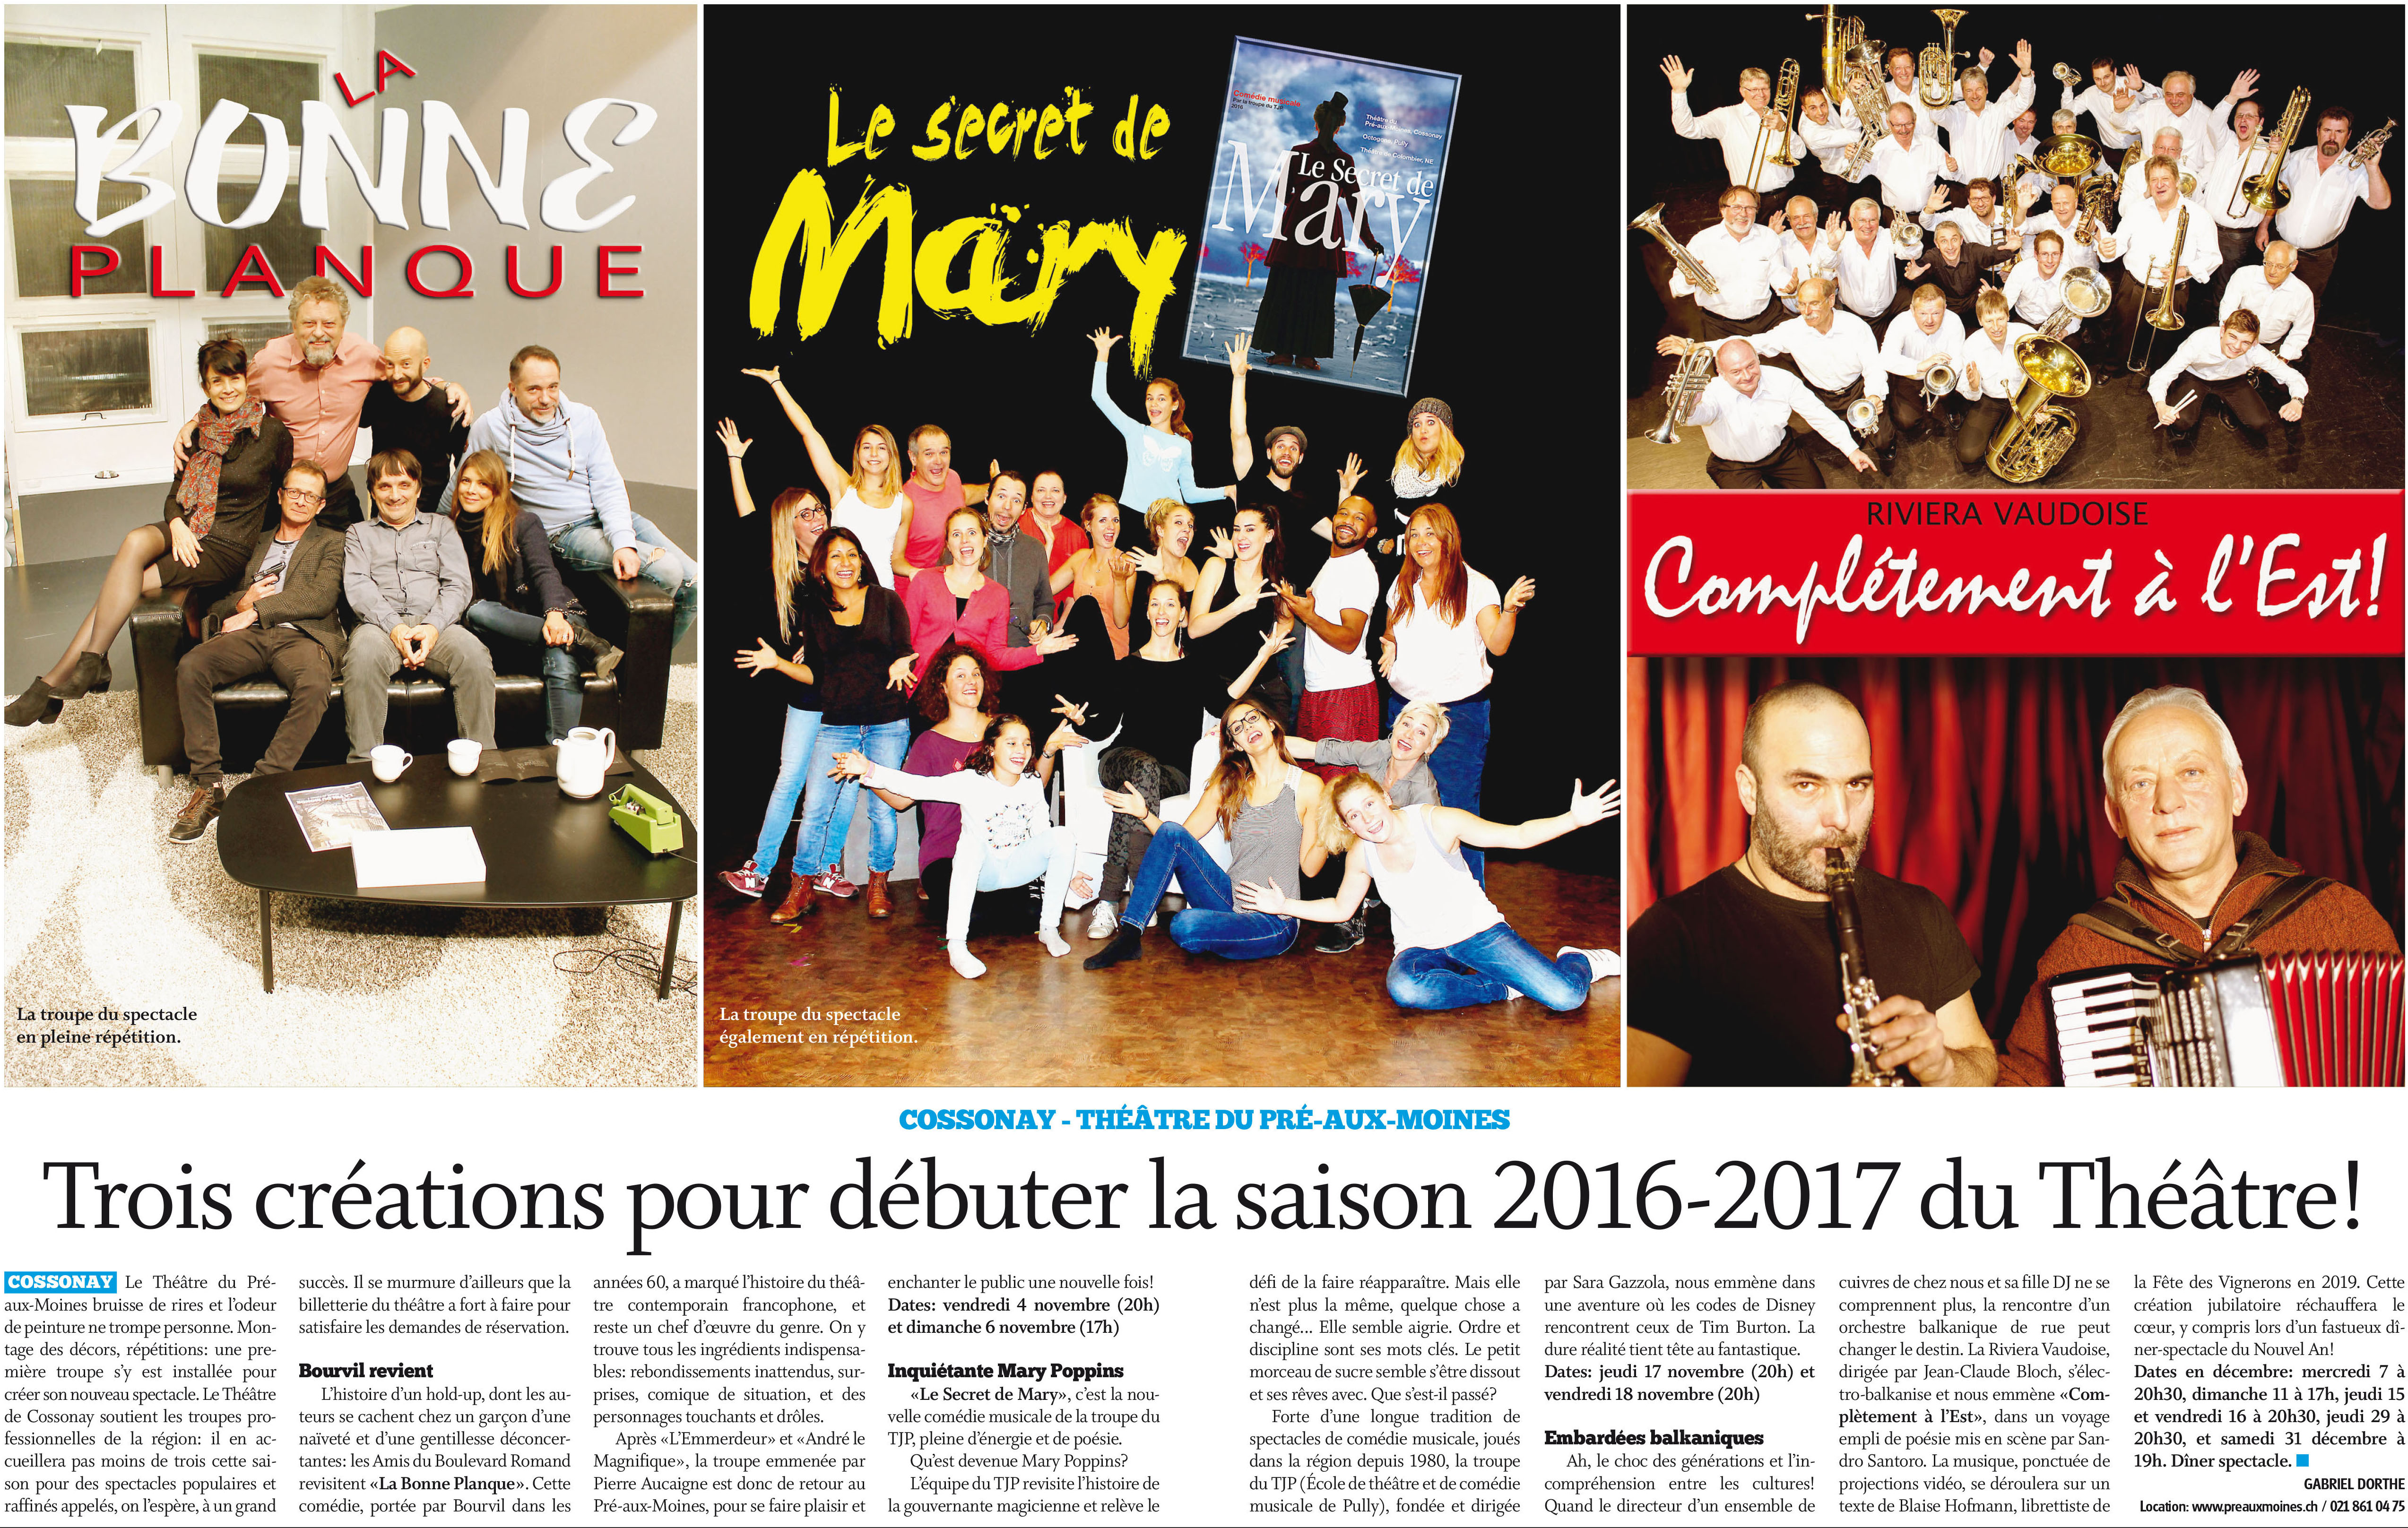 Journal de Cossonay, 28.10.2016